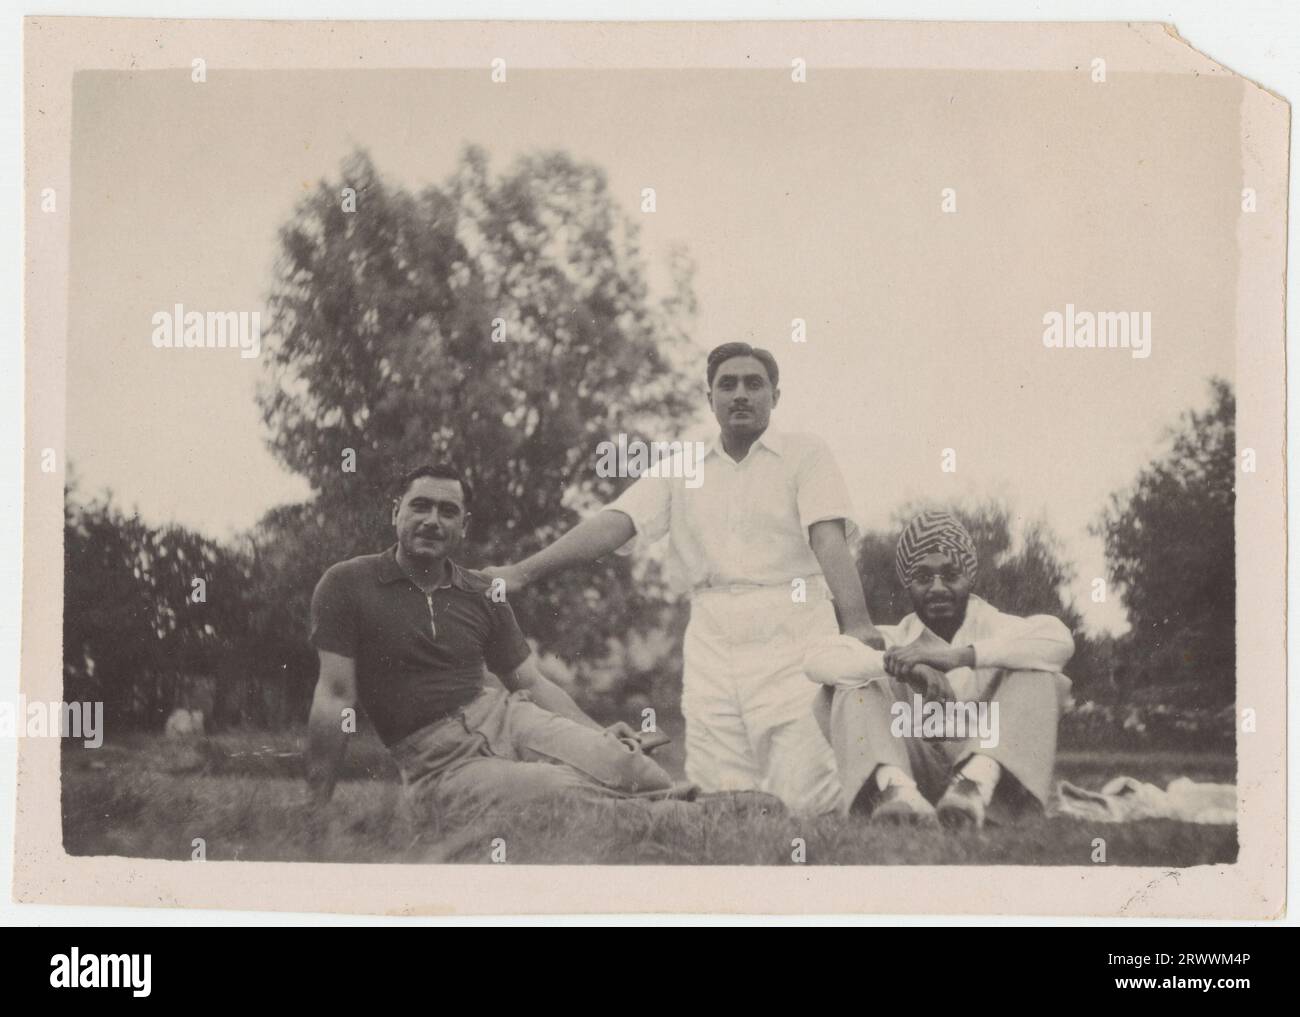 Drei junge Männer, die sich auf dem Rasen ausruhen. 32: Salim Khan mit Capt Nawabzada m Imbrahim Khan von Palinpur (L) und dem Yuvraj Bahatpur Pratap Singh von Nabha. Lahore, um 1933 - 34 separate Notizen vom Spender fügen hinzu: „Mein Großvater Salim Khan, mit einem Nawabzada des Palanpur-Staates und einem der Princelings des Nabha-Staates, Lahore um 1933 - 34 (wahrscheinlich der Gymkhana Cricket Ground). Stockfoto